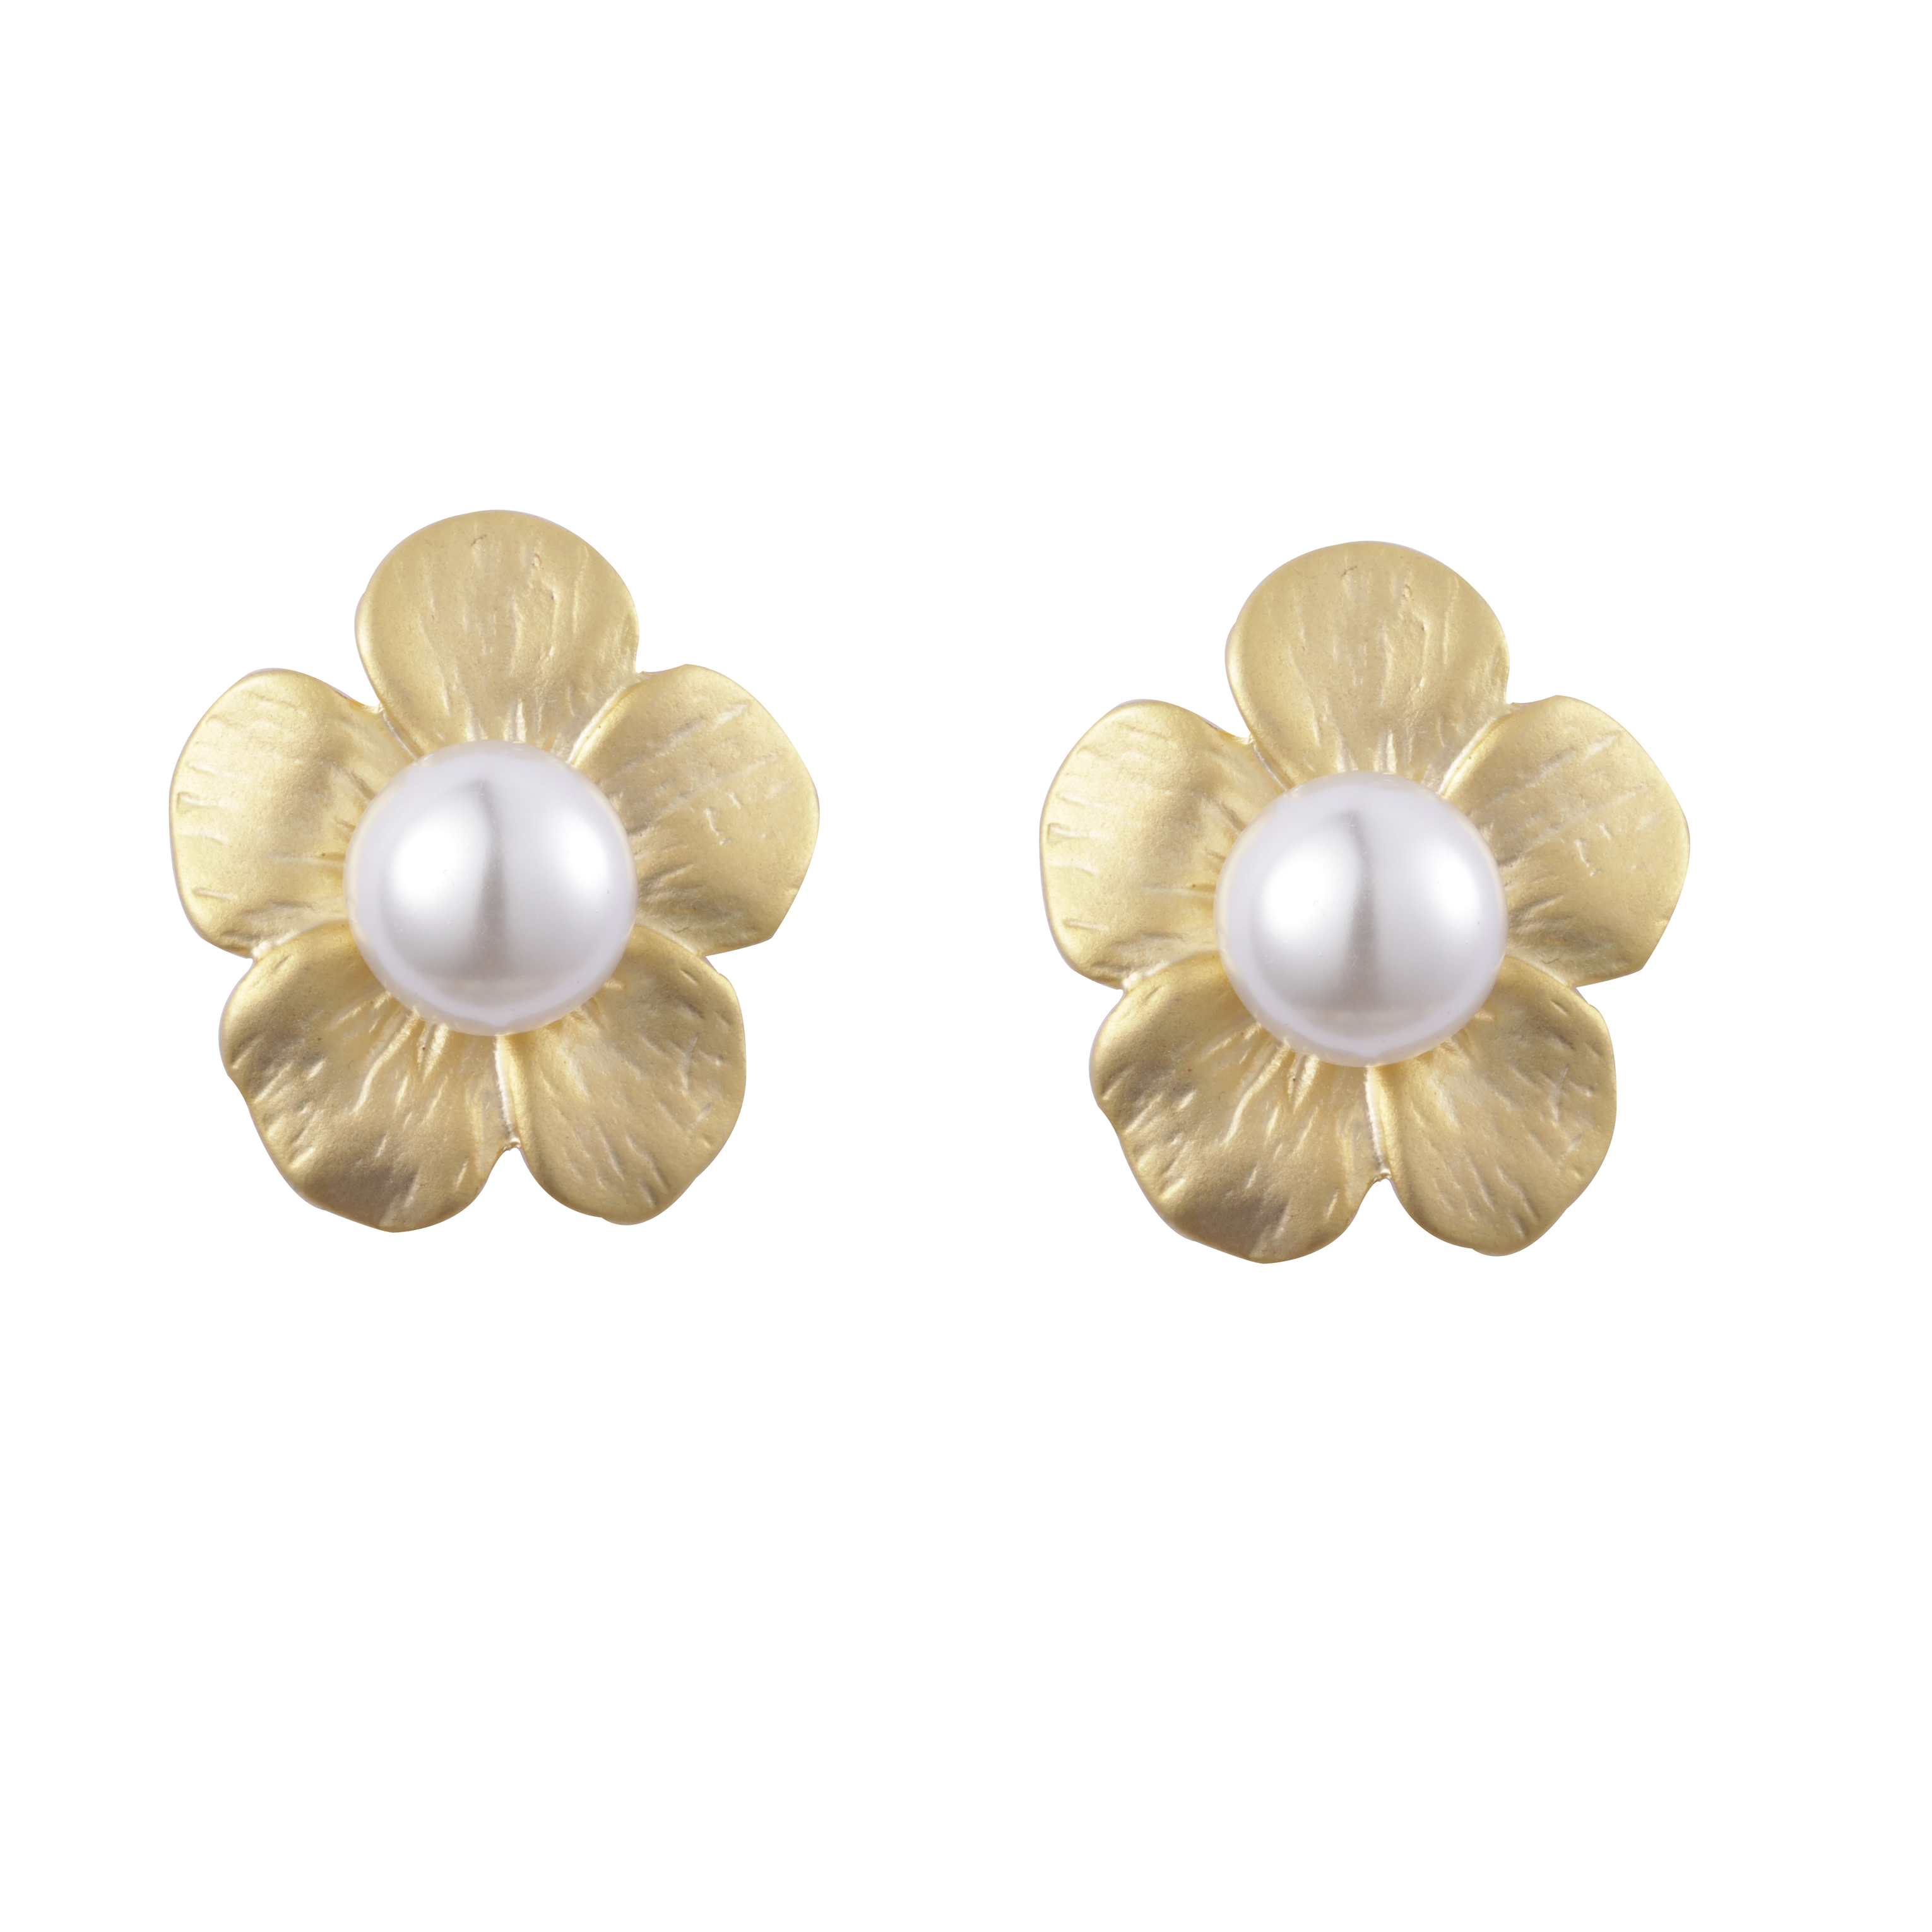 Liefern Sie hochwertige, mit Blumenmuster und Perlen verzierte, modische Ohrringe mit 14-Karat-Vergoldung und mattem Effekt